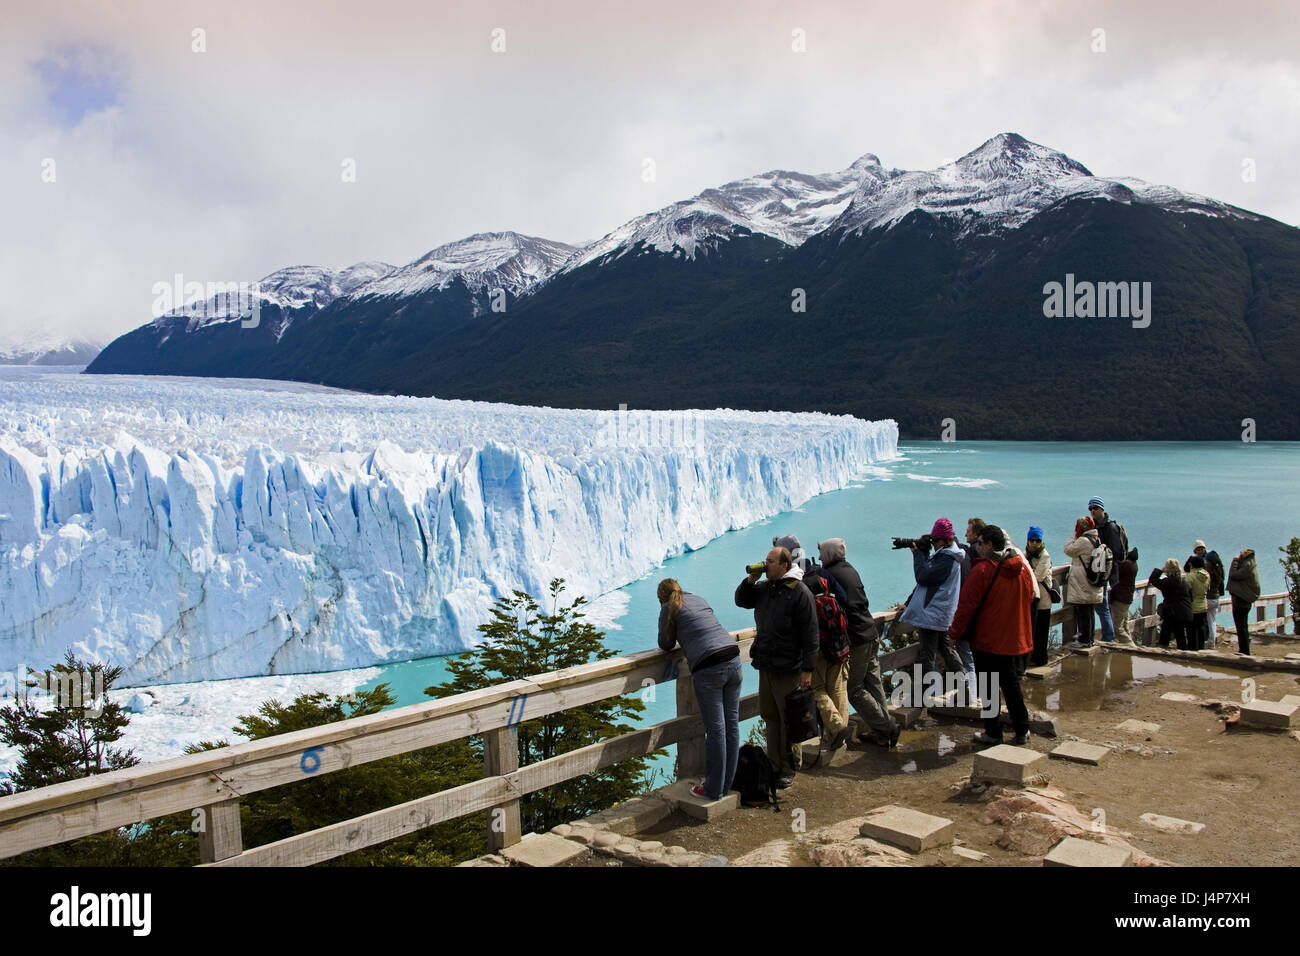 Argentina, Patagonia, Lago Argentino, Glaciar Perito Moreno, scarp, lookout, tourist, no model release, Stock Photo